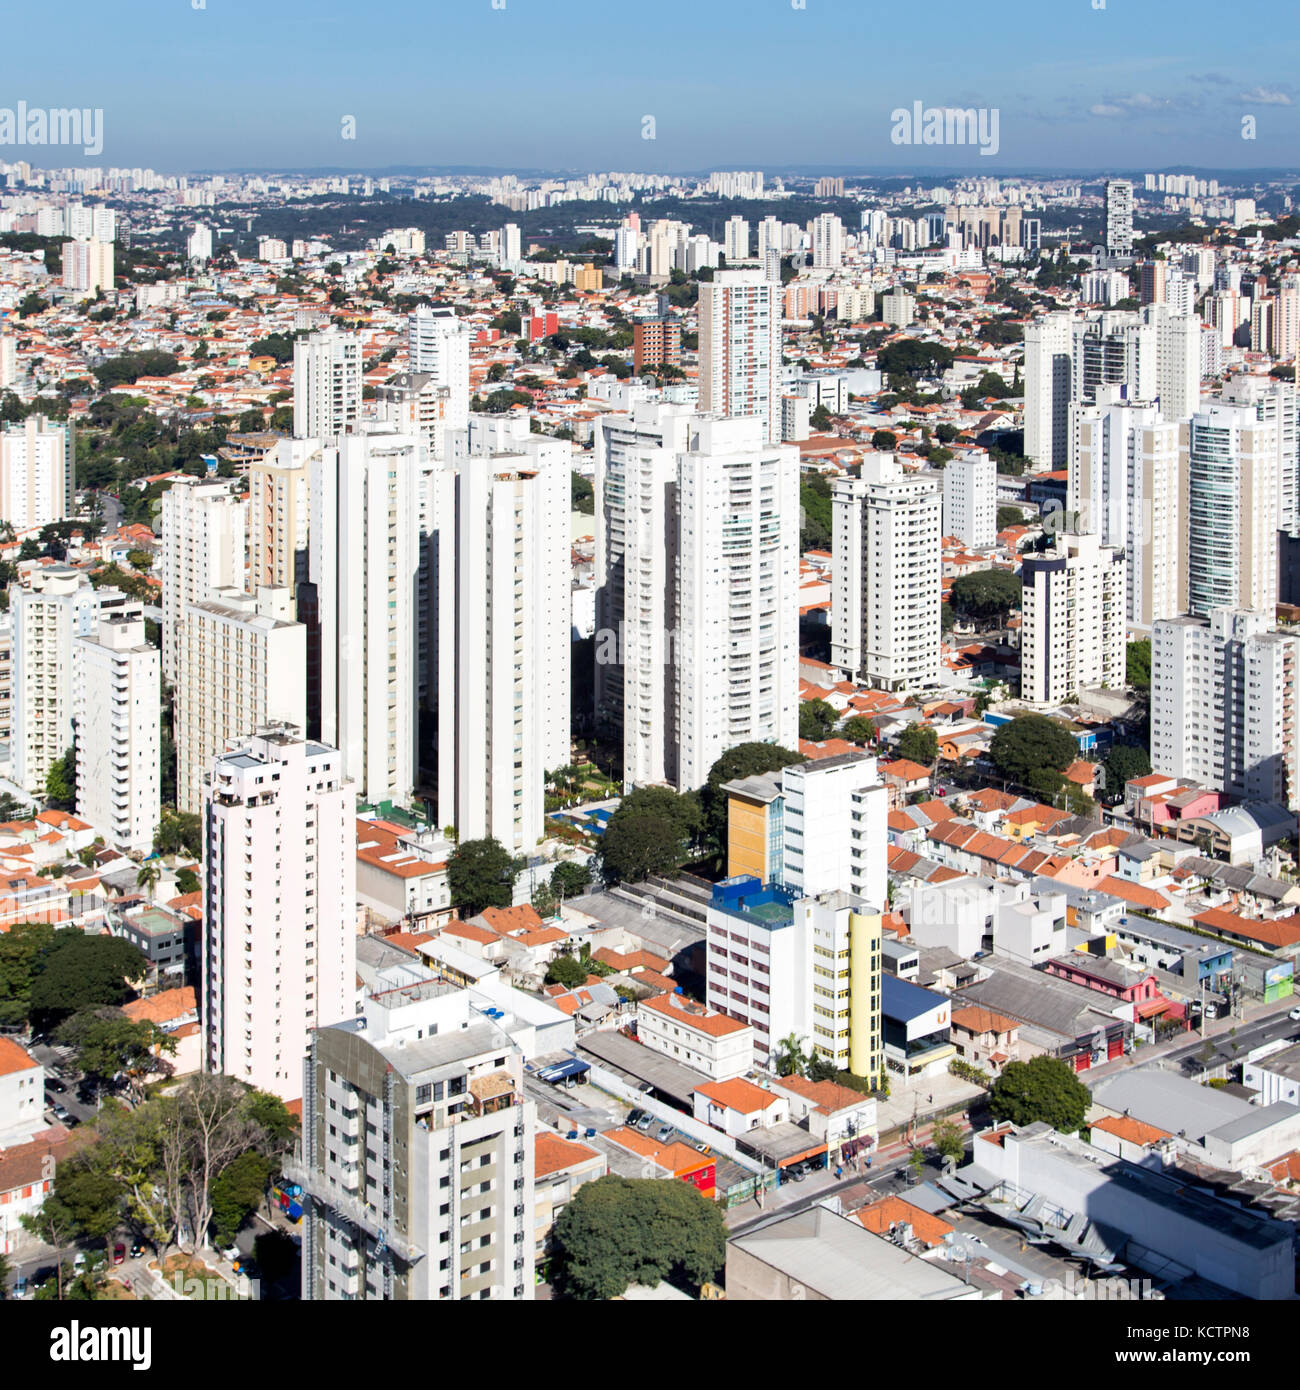 Vue aérienne du quartier de Vila Romana dans la ville de São Paulo - Brésil. Banque D'Images